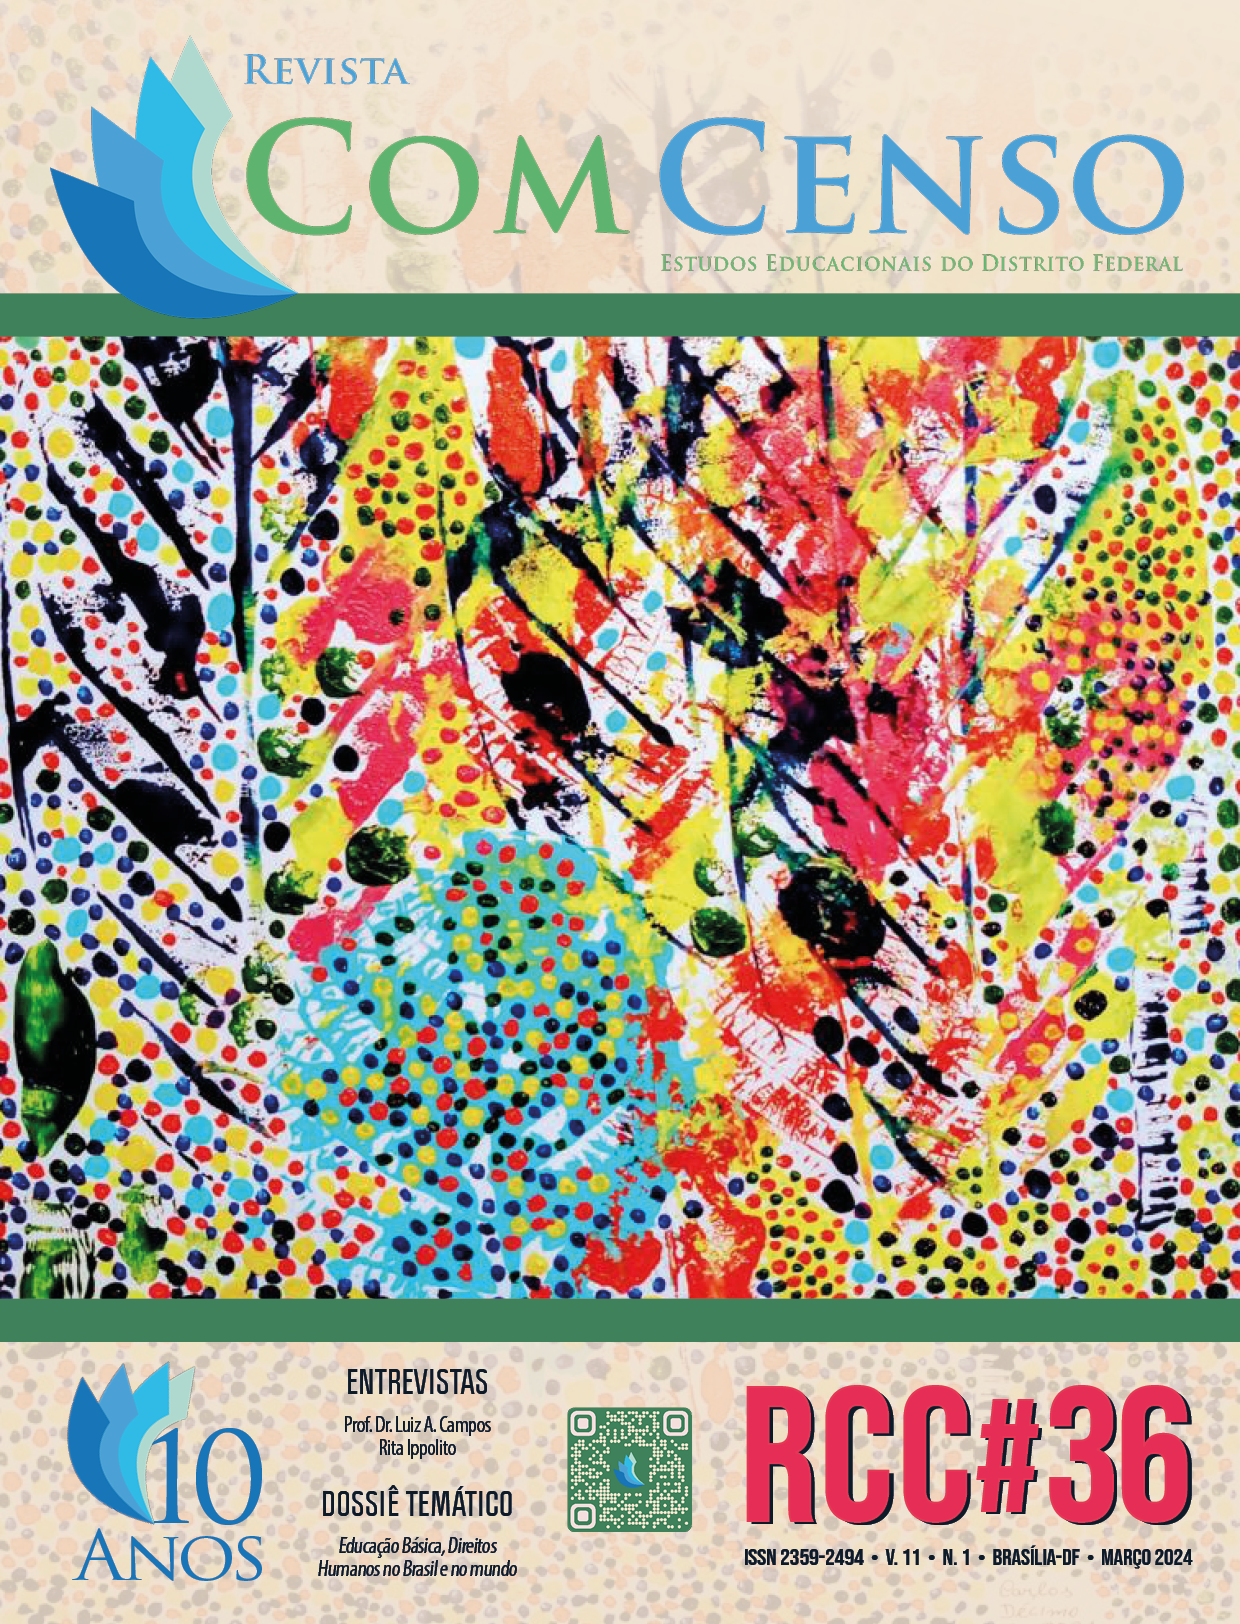 					View Vol. 11 No. 1 (2024): Revista Com Censo: Estudos Educacionais do Distrito Federal (RCC#36)
				